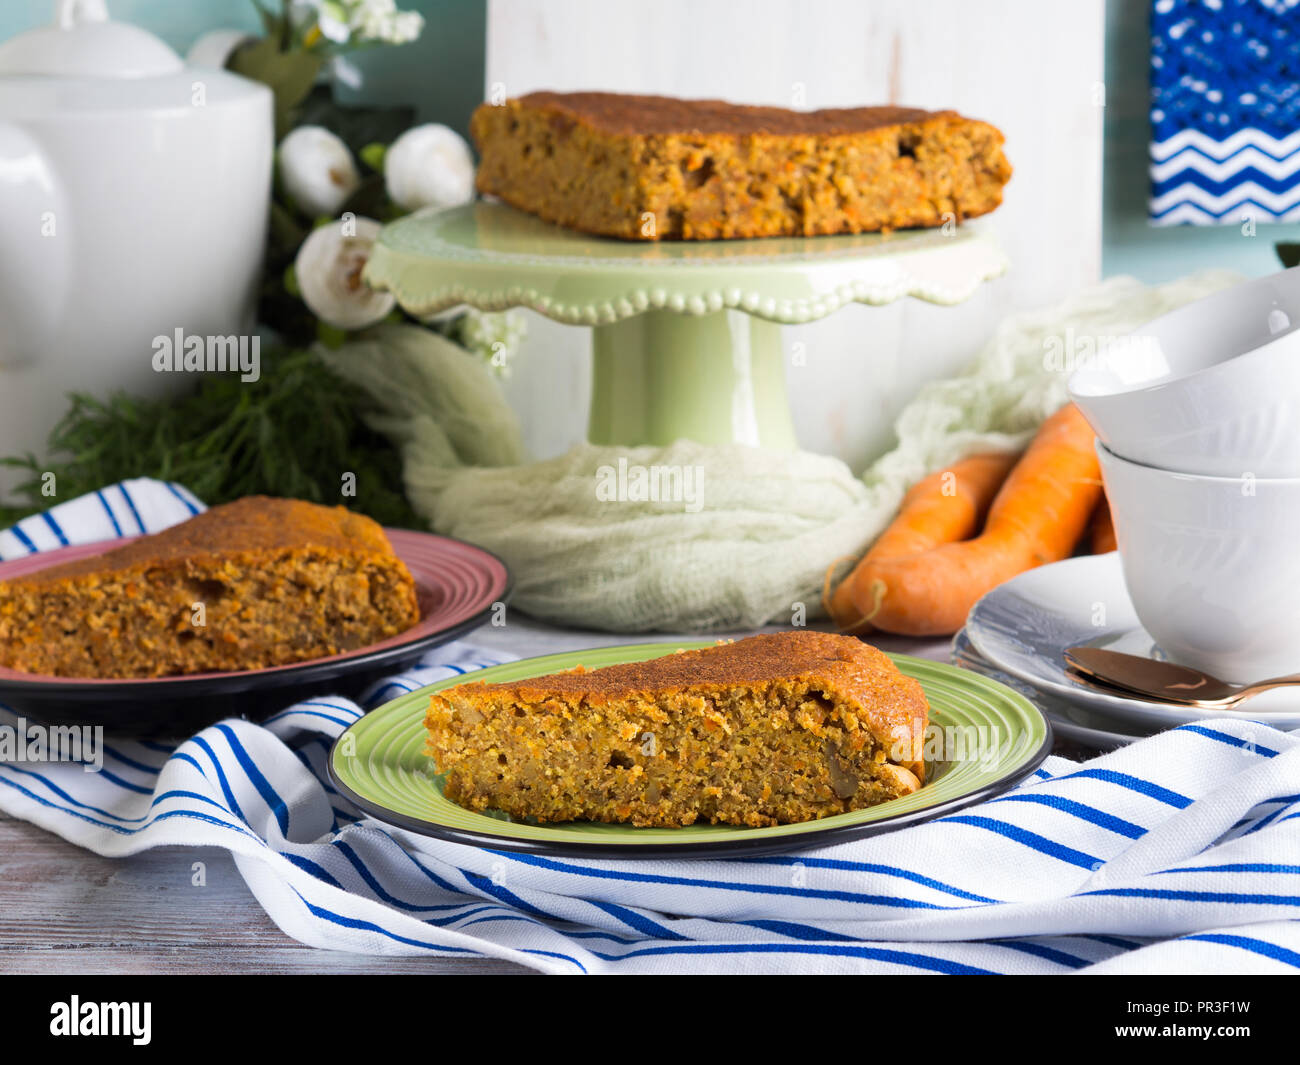 Speziata torta di carote con noci e cannella con colazione impostazione dello sfondo Foto Stock